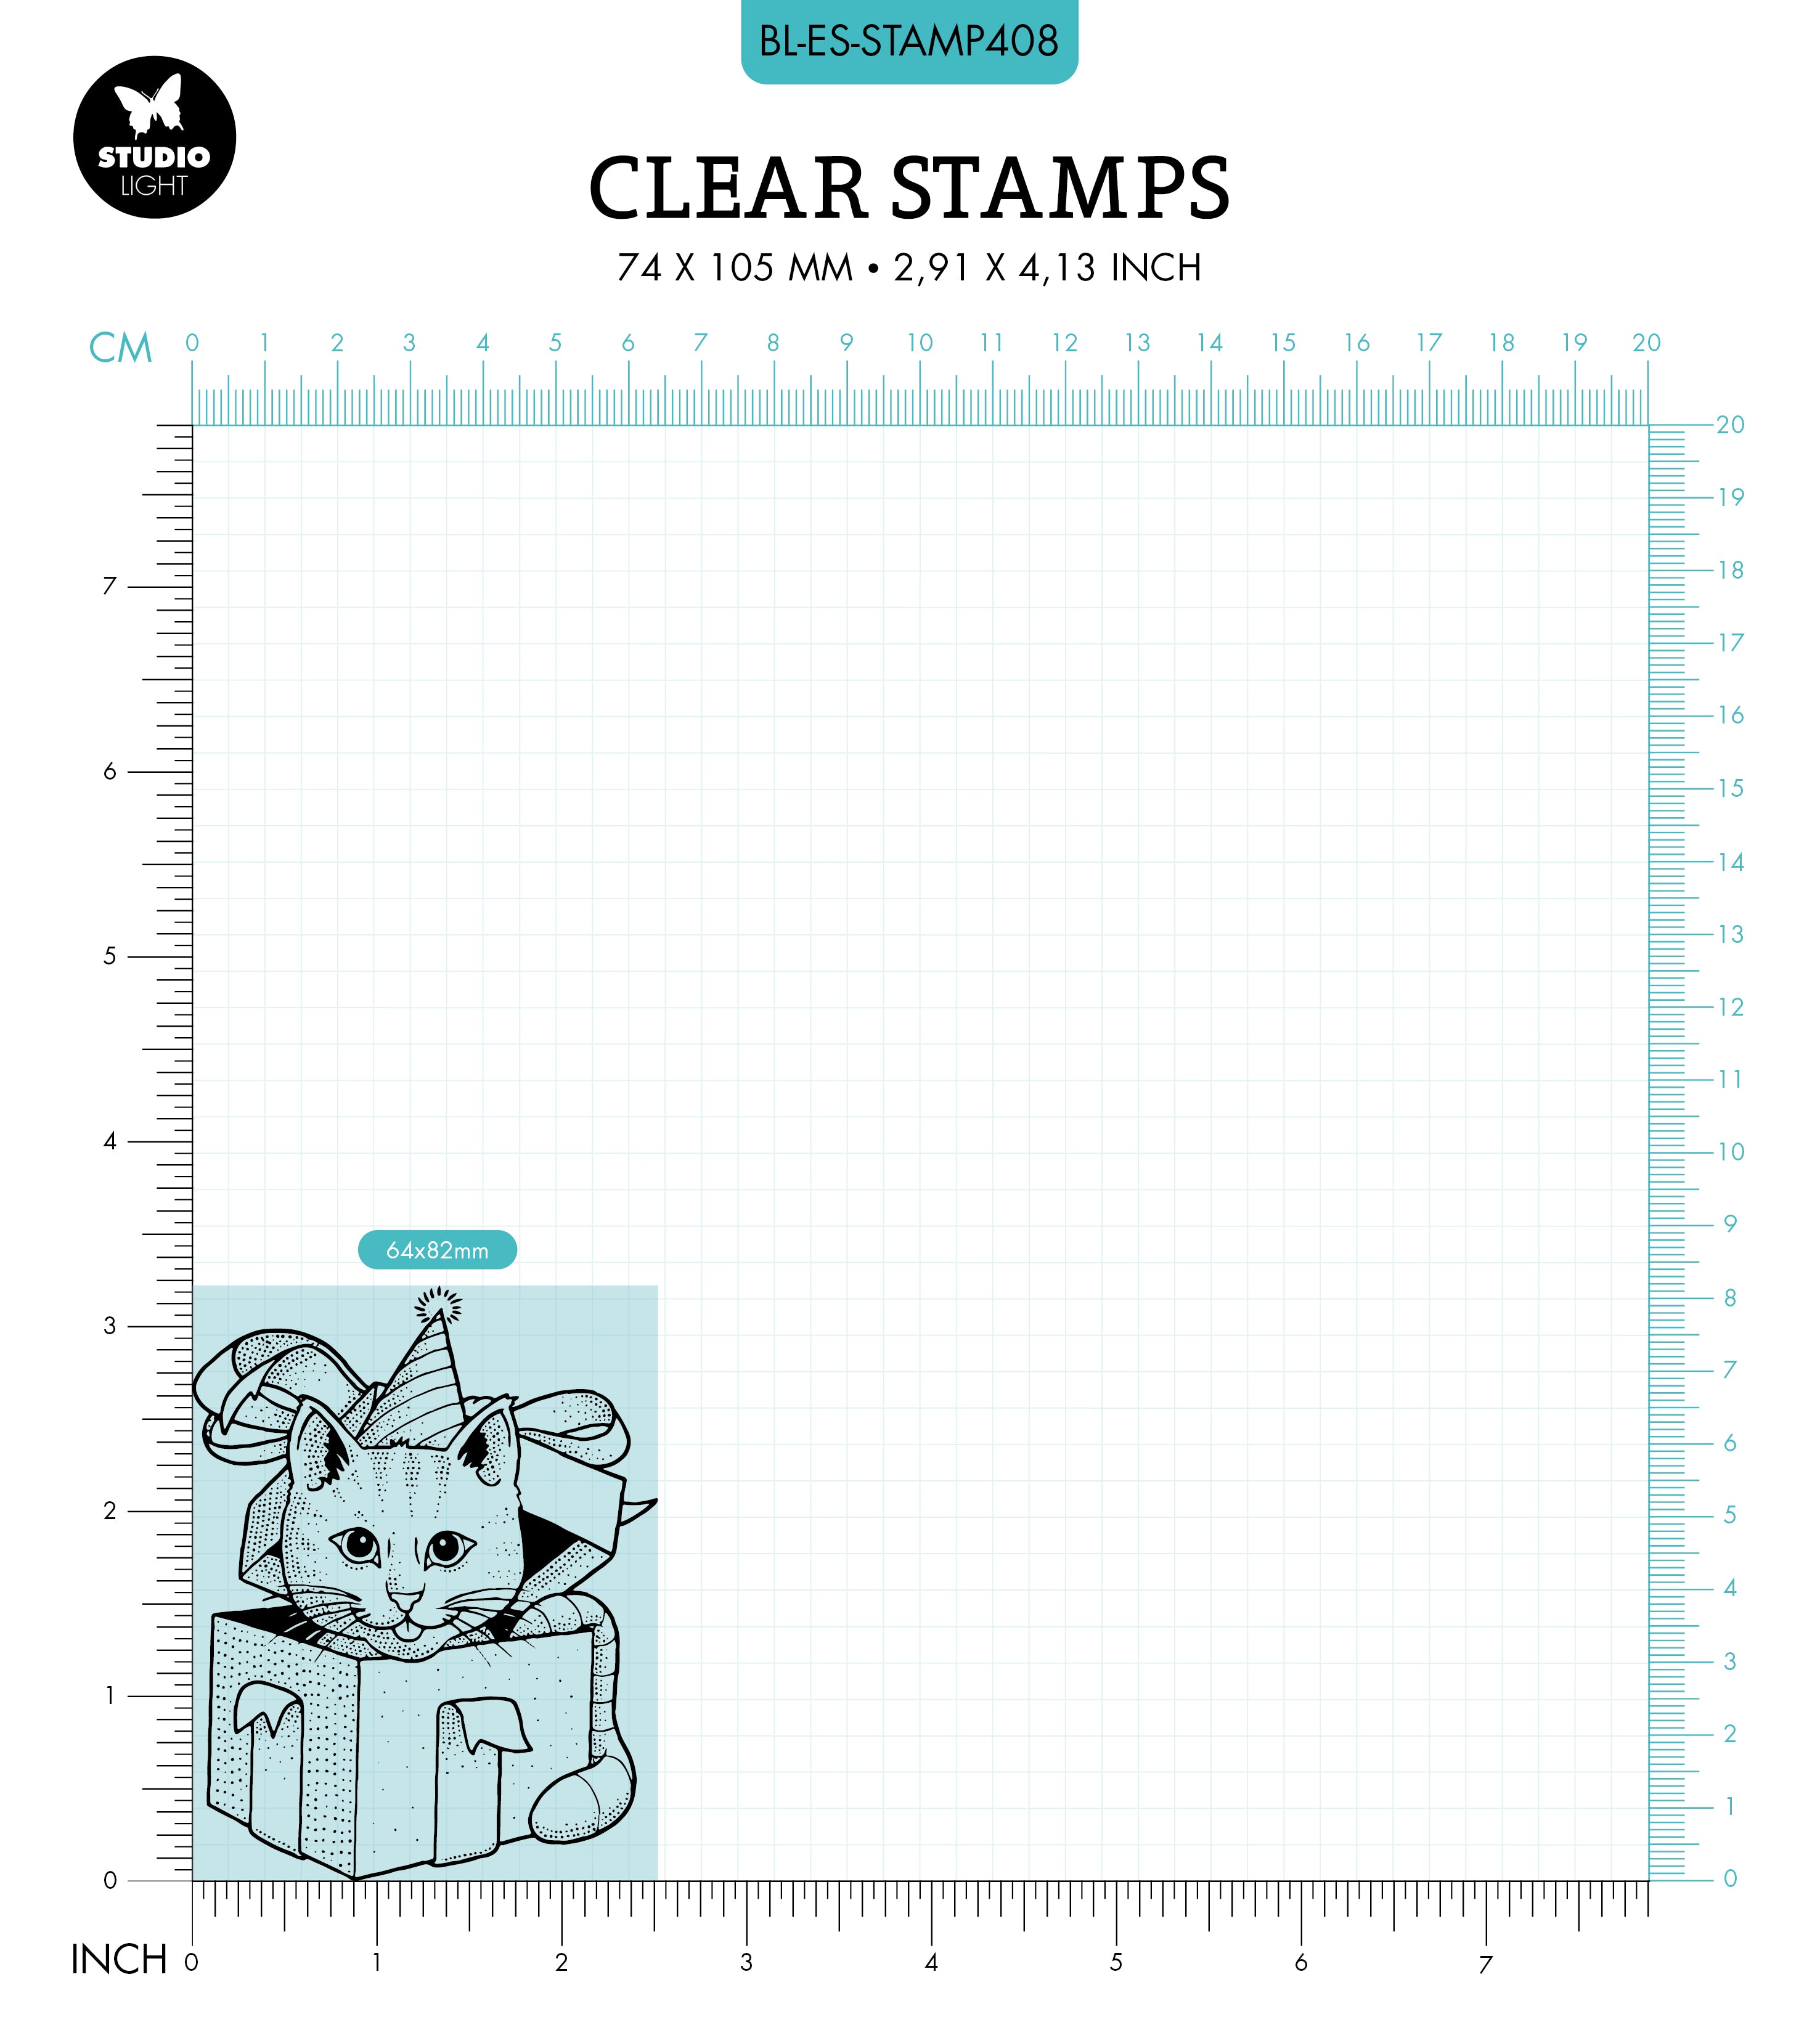 BL Clear Stamp Cat In A Box Essentials 82x64x3mm 1 PC nr.408